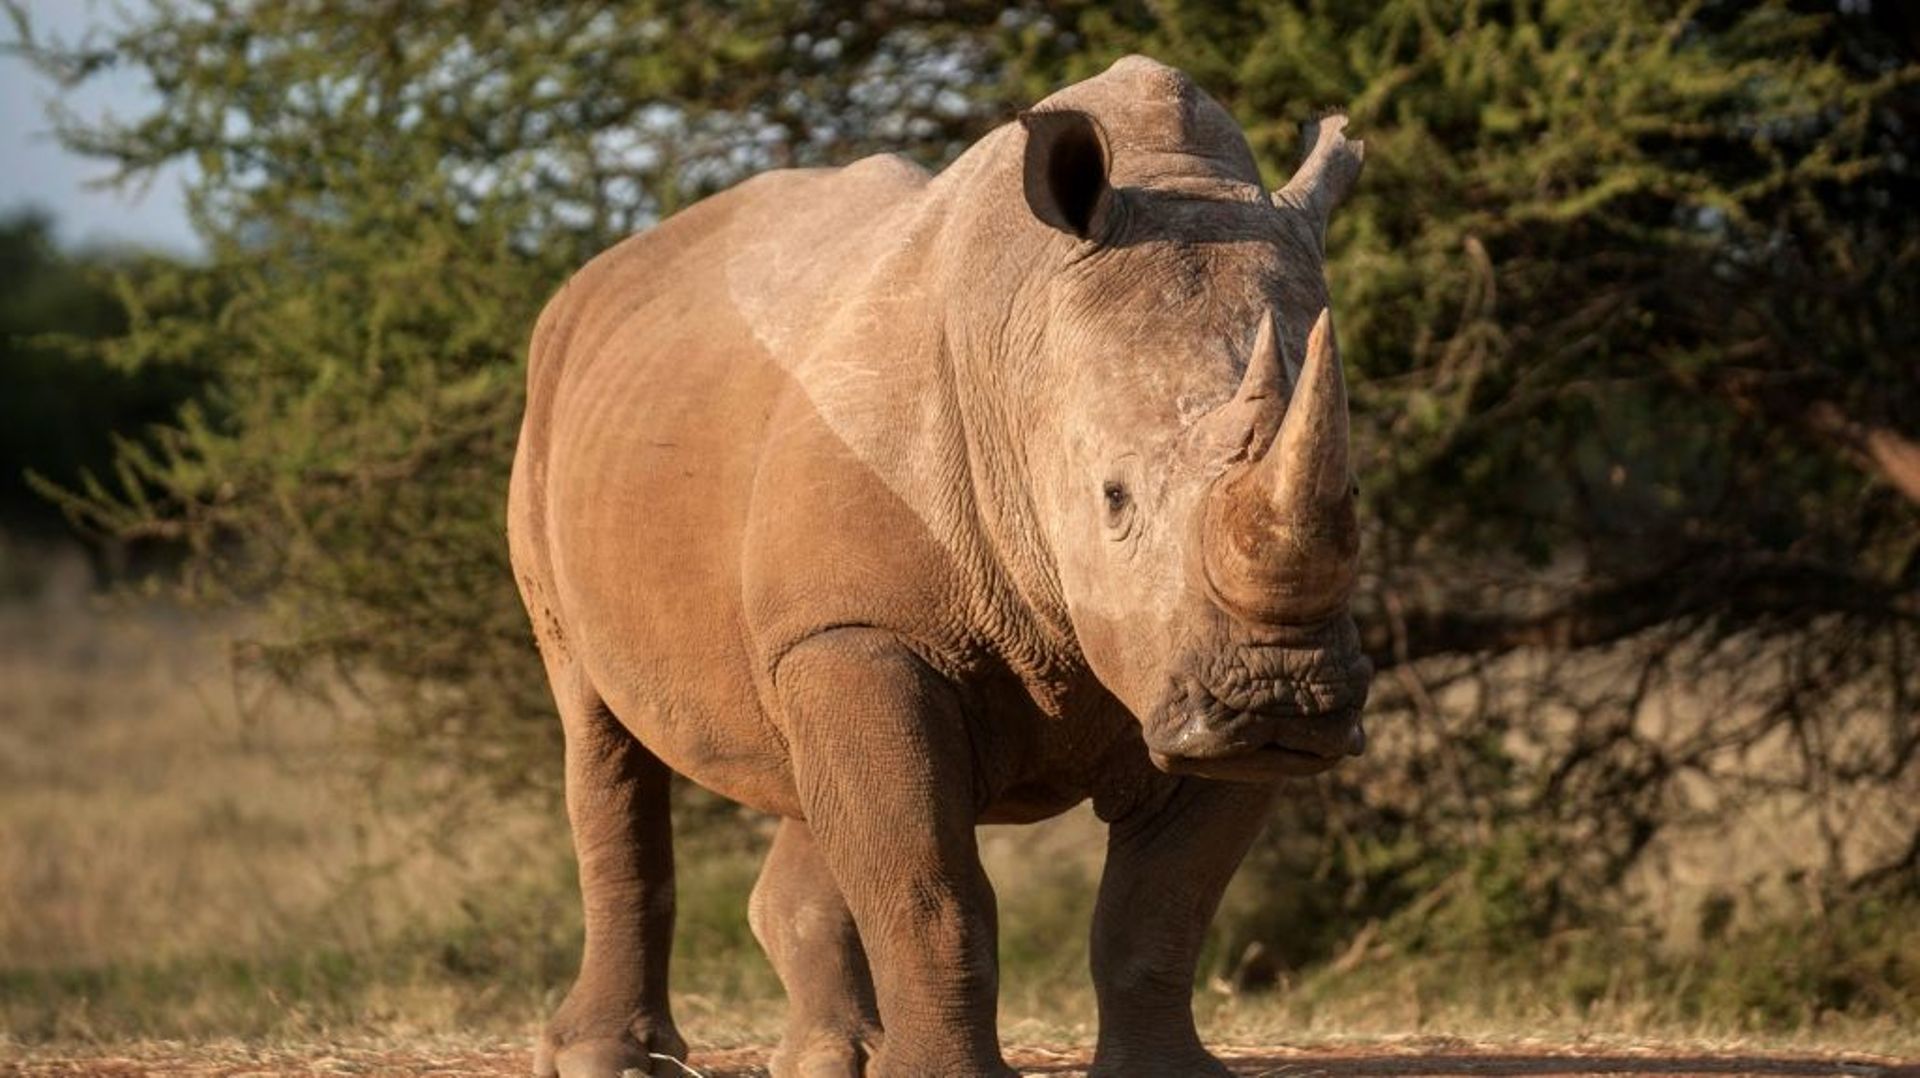 Un rhinoceros près de Vaalwater, dans la province de Limpopo, en Afrique du Sud, le 17 mars 2015.